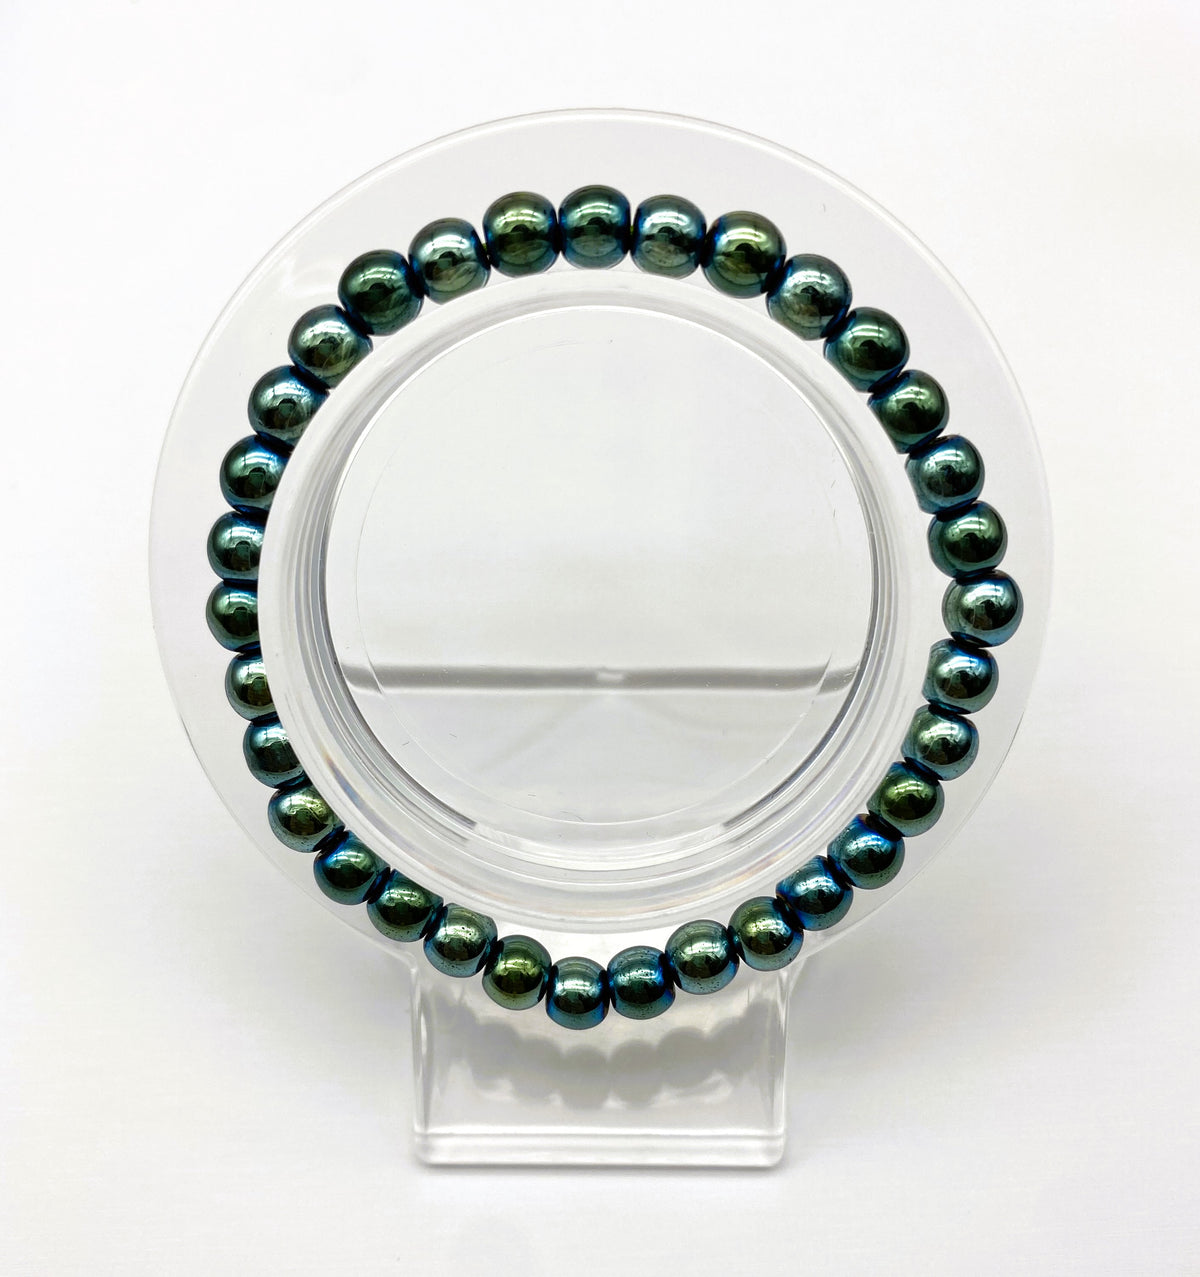 Hematite $1.99 Plain Design  8mm 6mm Bracelet Collection Gemstone Round Beads Stretch Bracelet 7.5 Inch Unisex